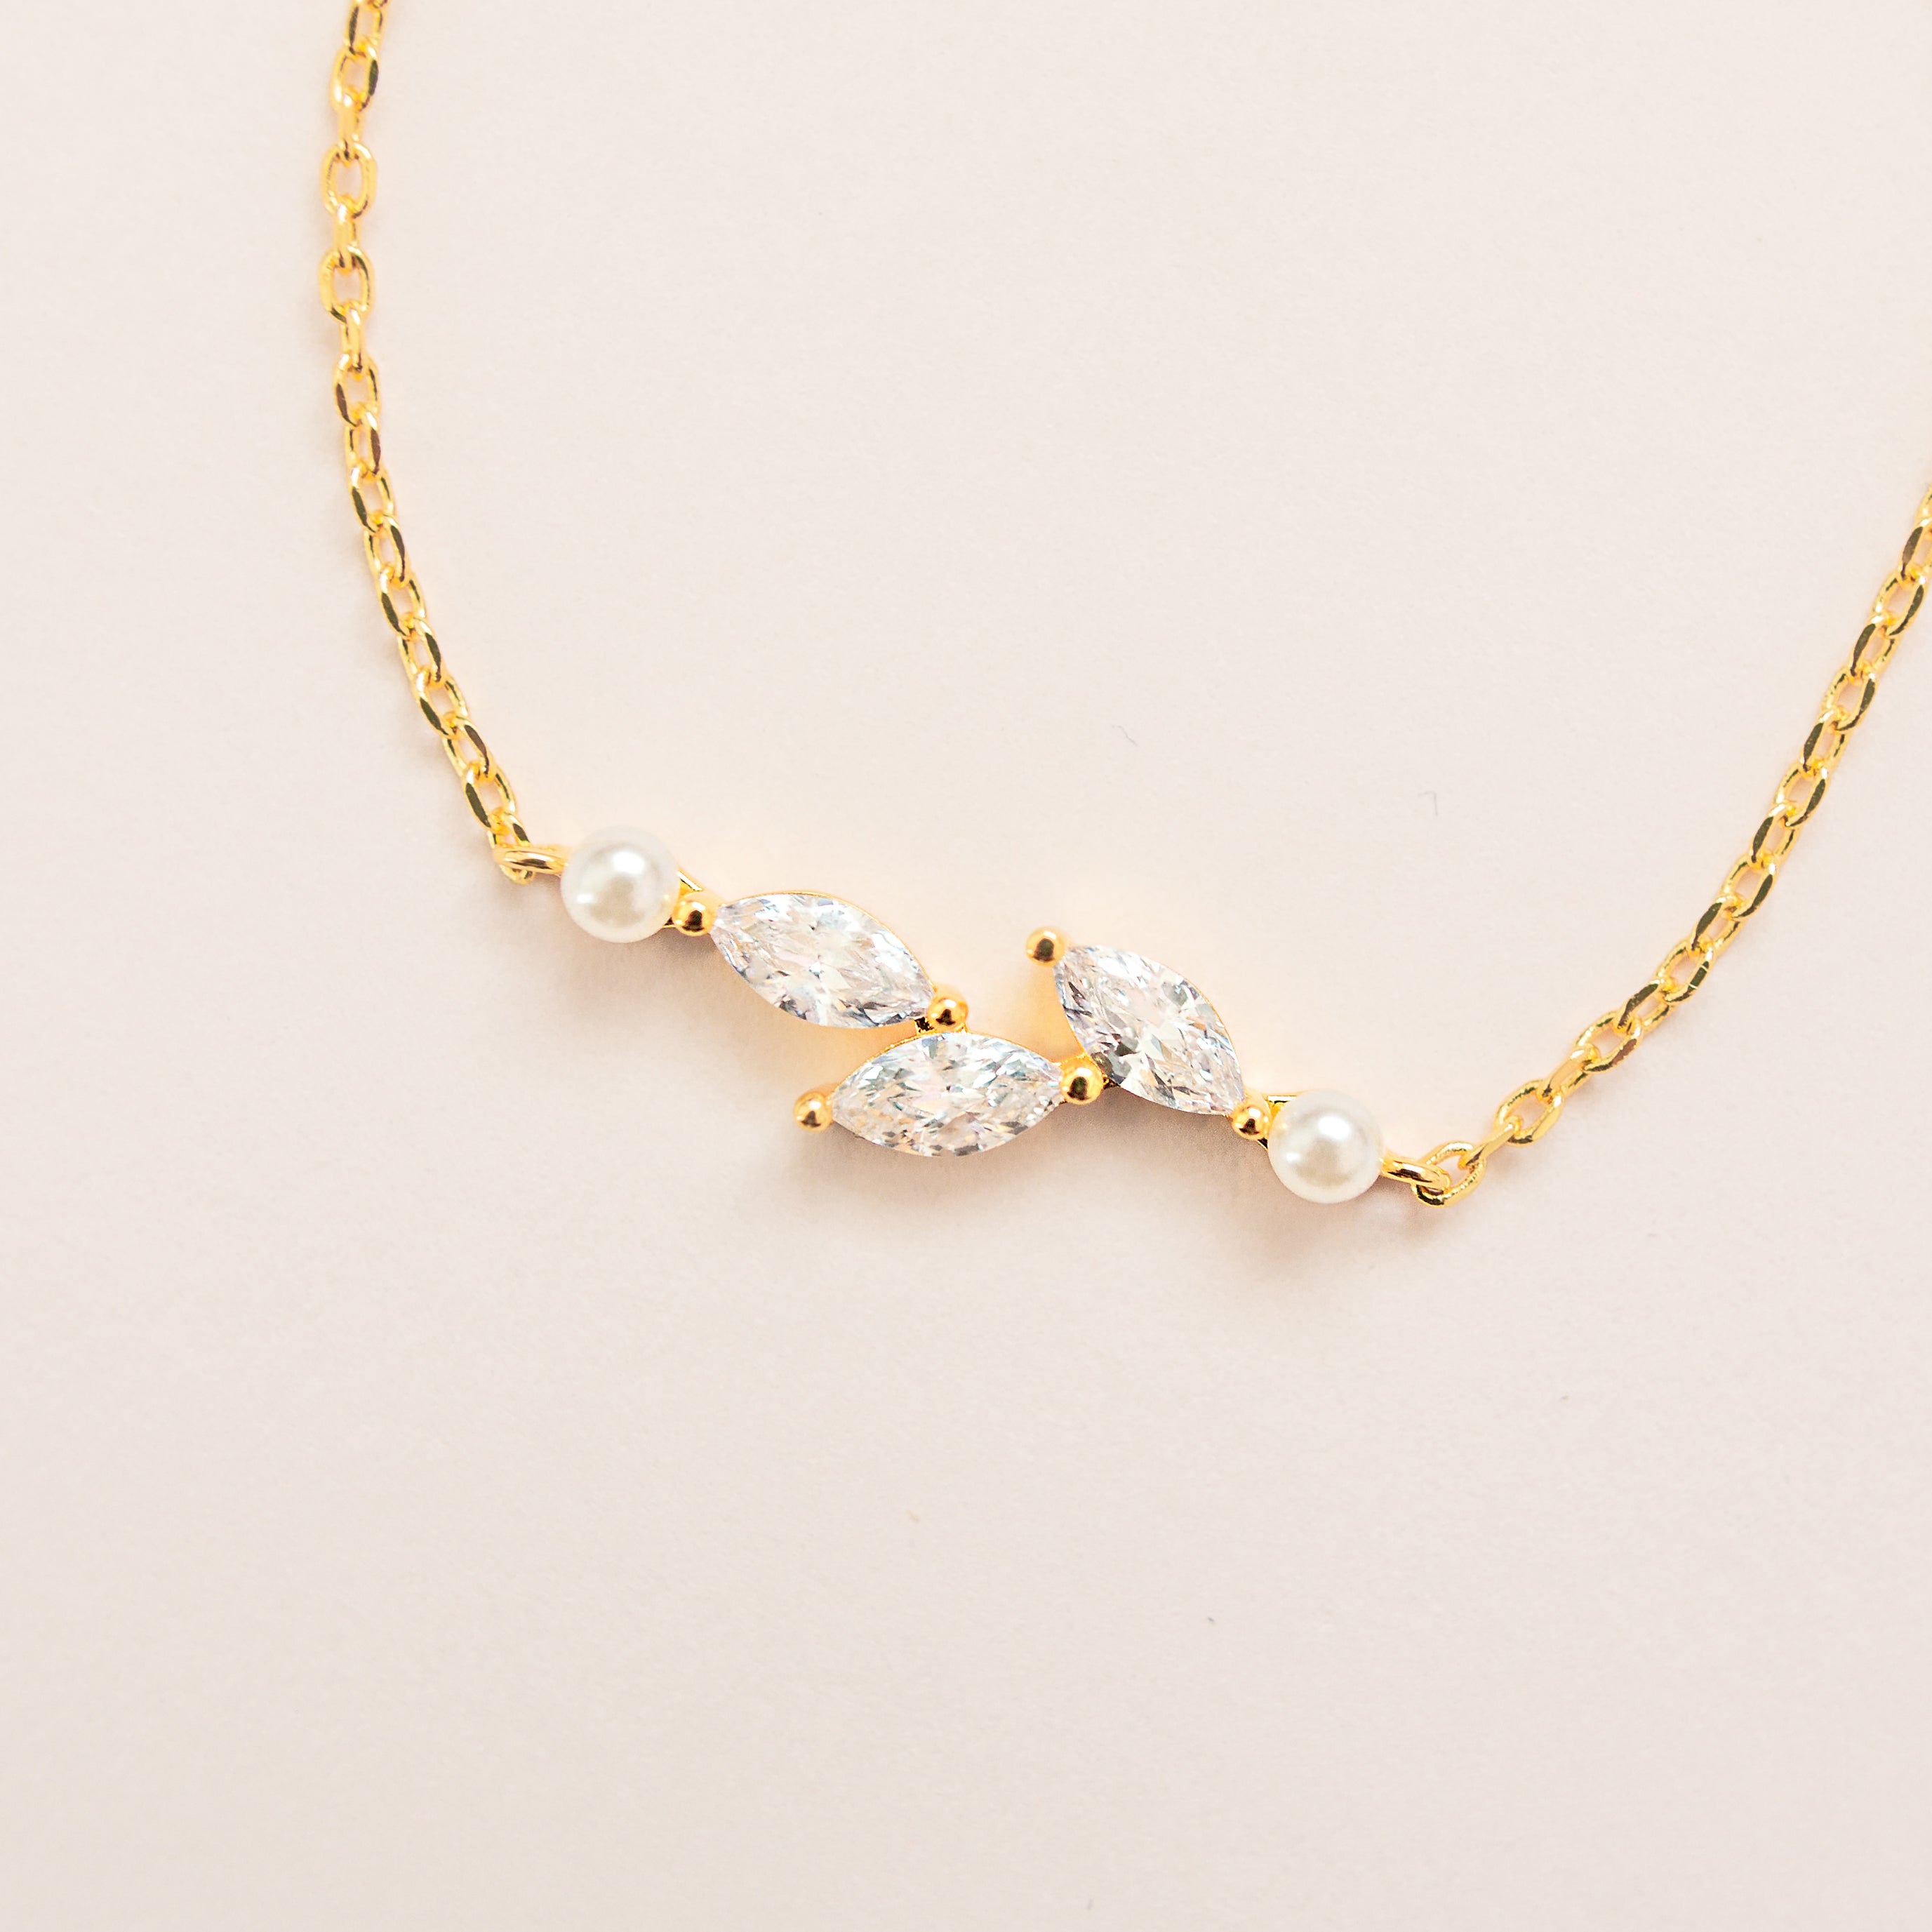 ERYN BRACELET // Silver dainty pearl and cz bracelet